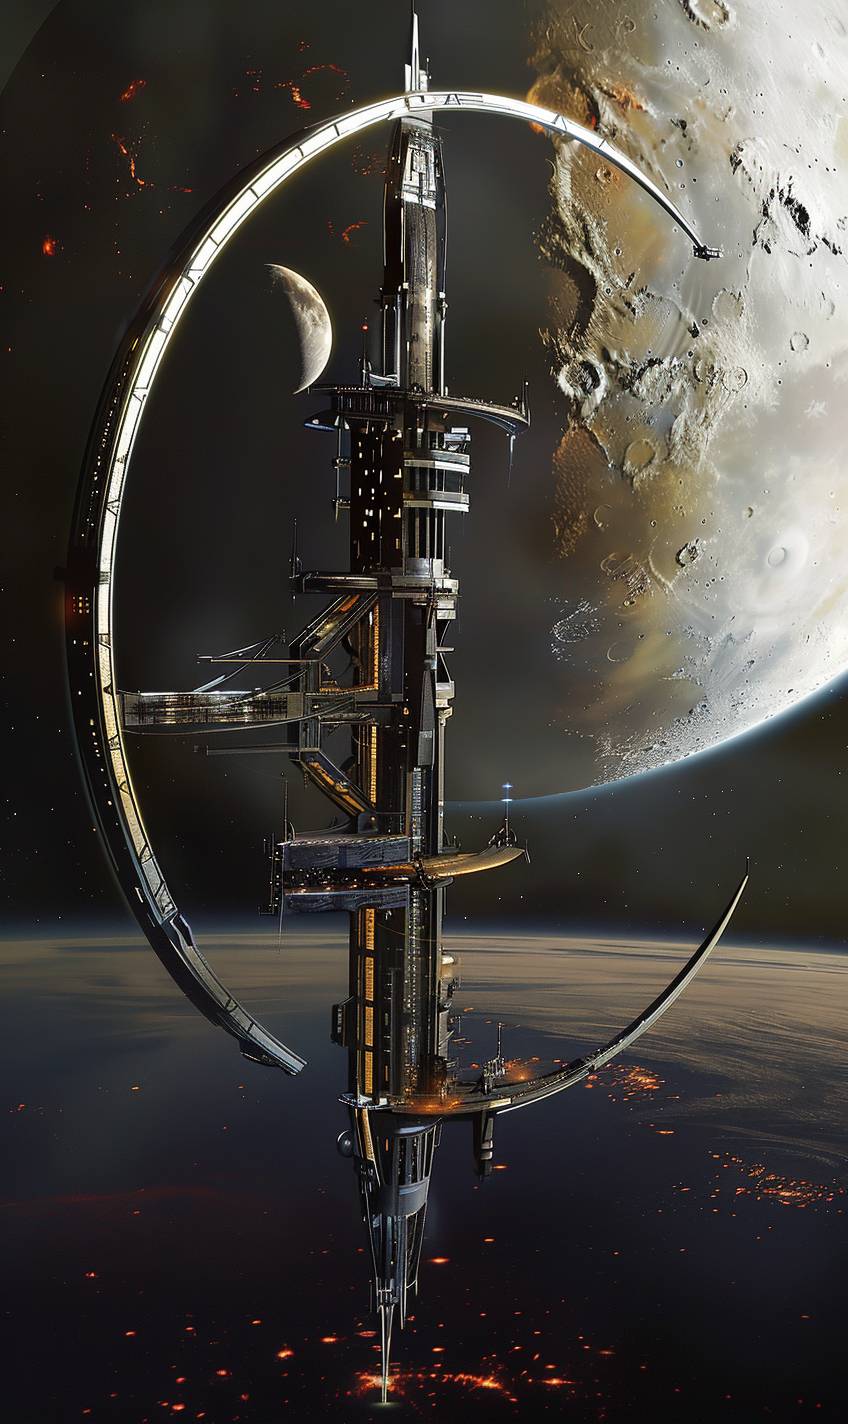 遠い月を周回する宇宙ステーション、サンチャゴ・カラトラバのスタイルで